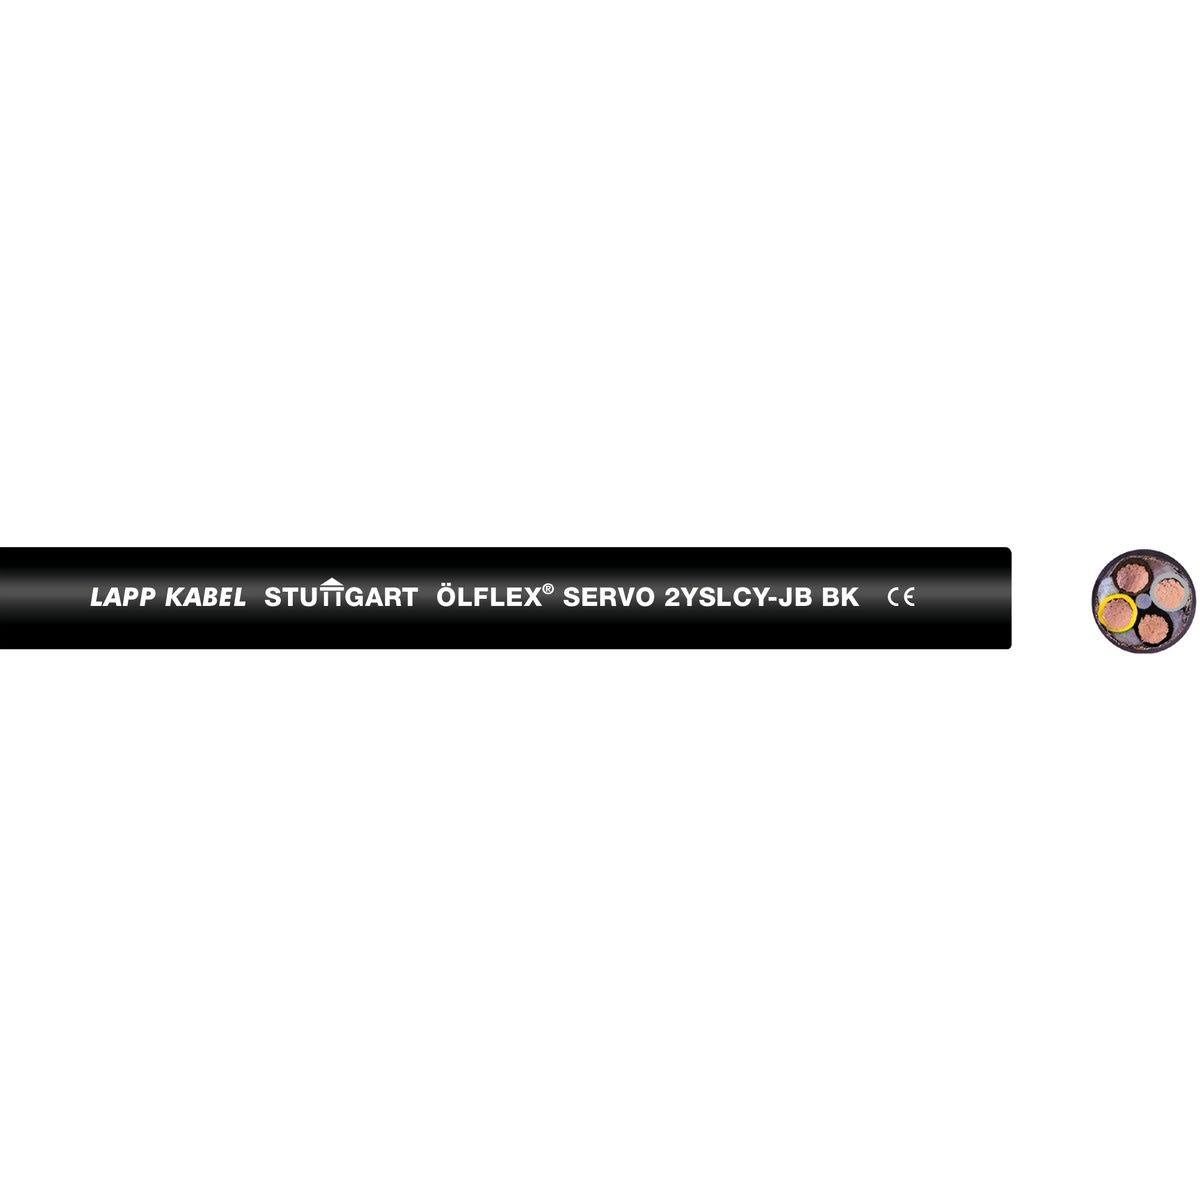 Lapp - ÖLFLEX SERVO 2YSLCY-JB BK 4G16